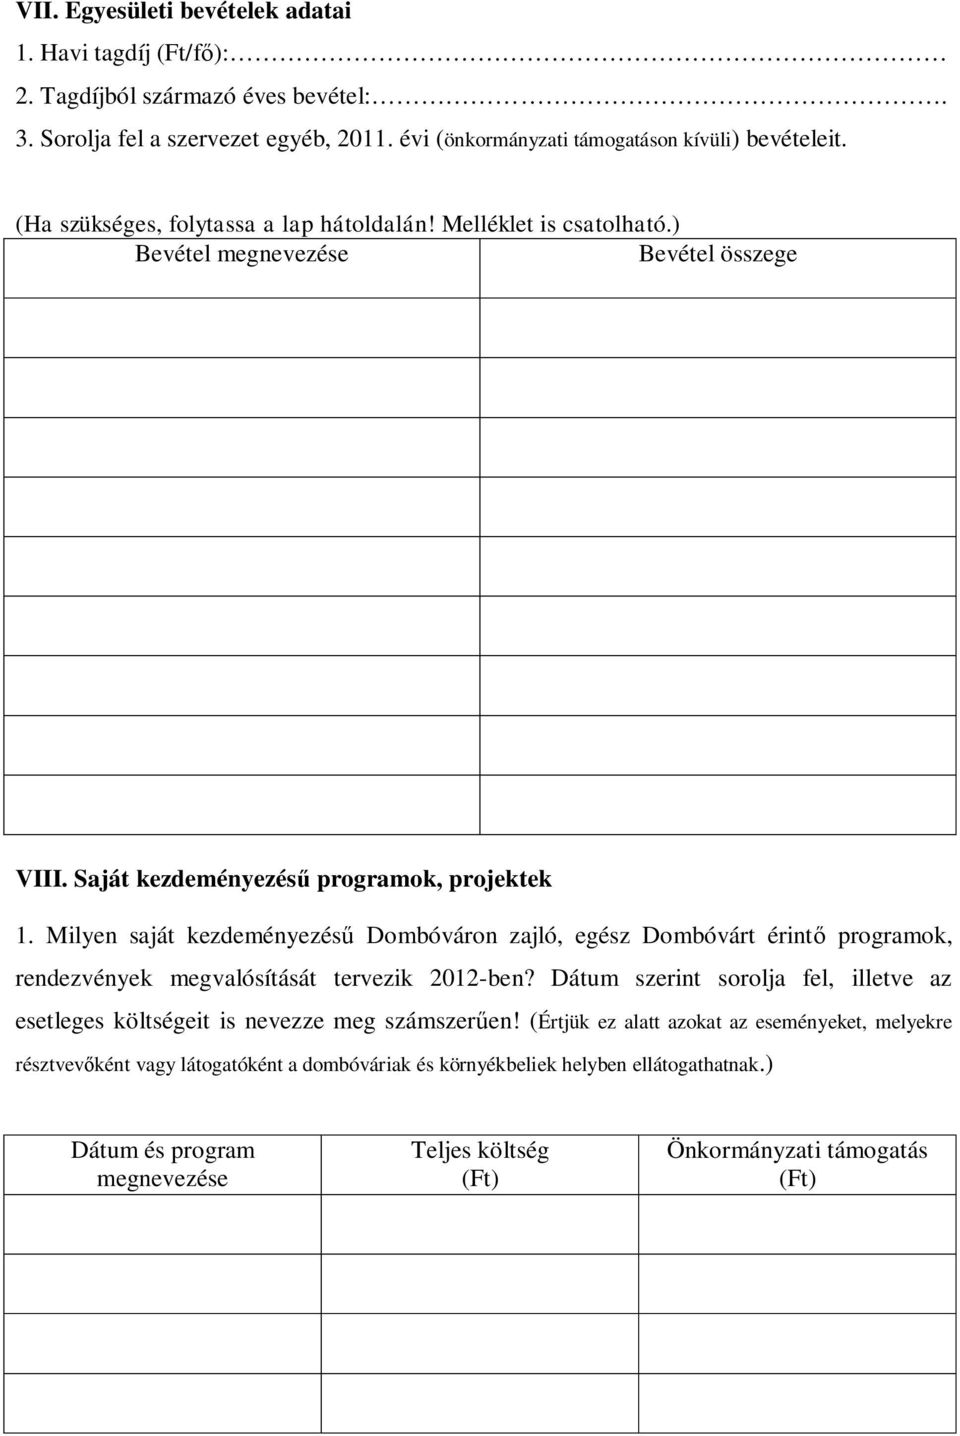 Milyen saját kezdeményezésű Dombóváron zajló, egész Dombóvárt érintő programok, rendezvények megvalósítását tervezik 2012-ben?